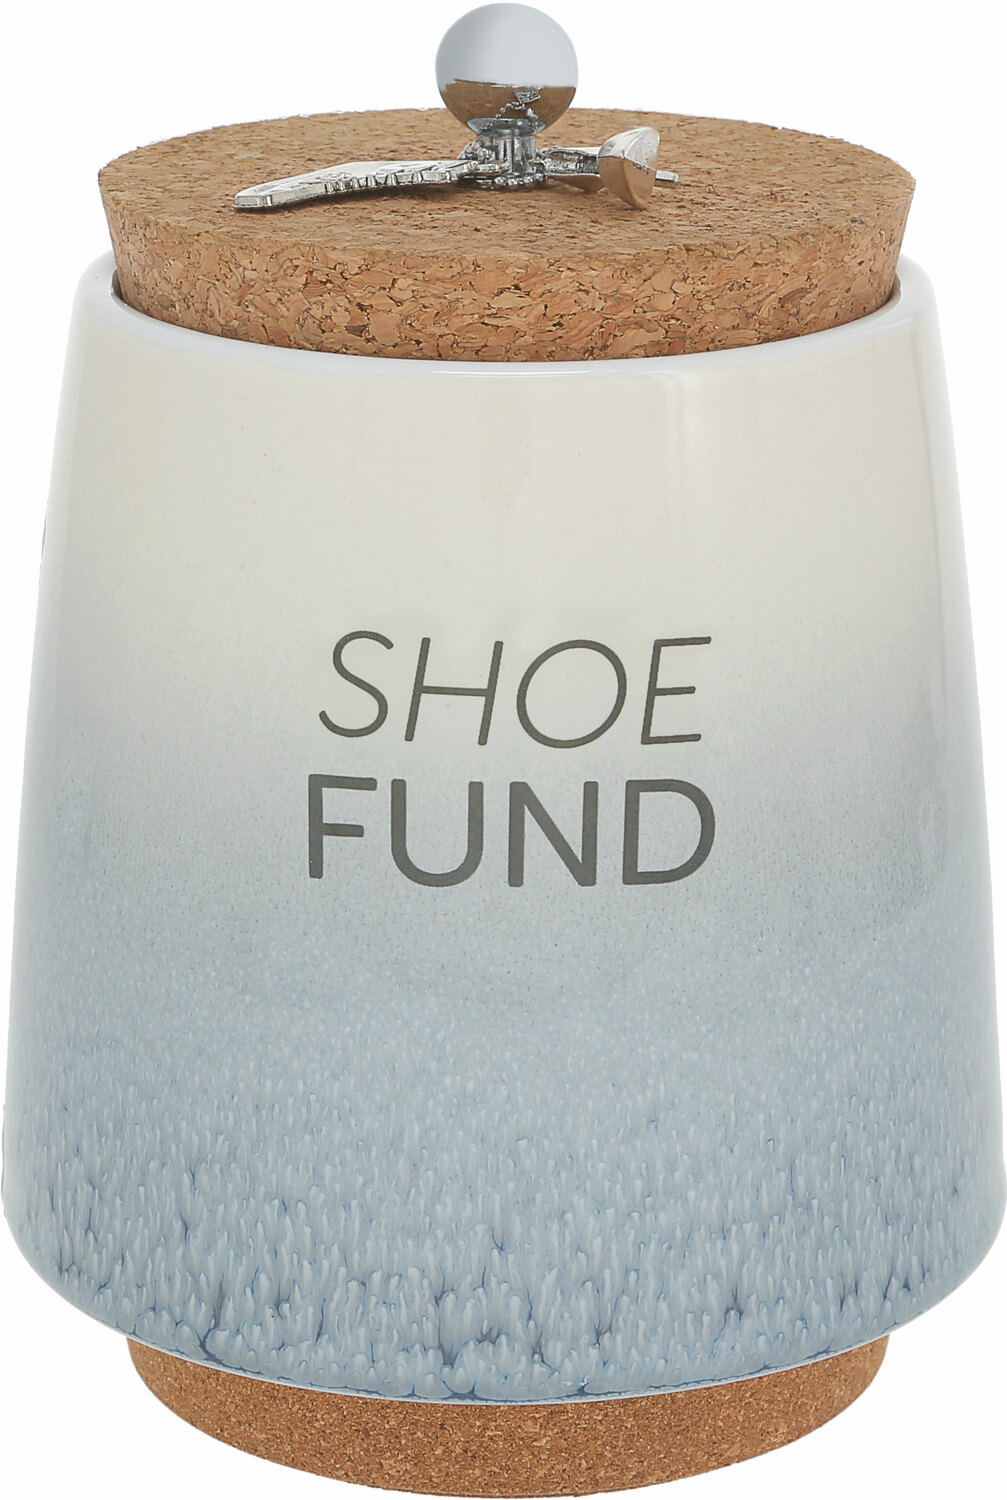 Shoe by So Much Fun-d - Shoe - 6.5" Ceramic Savings Bank